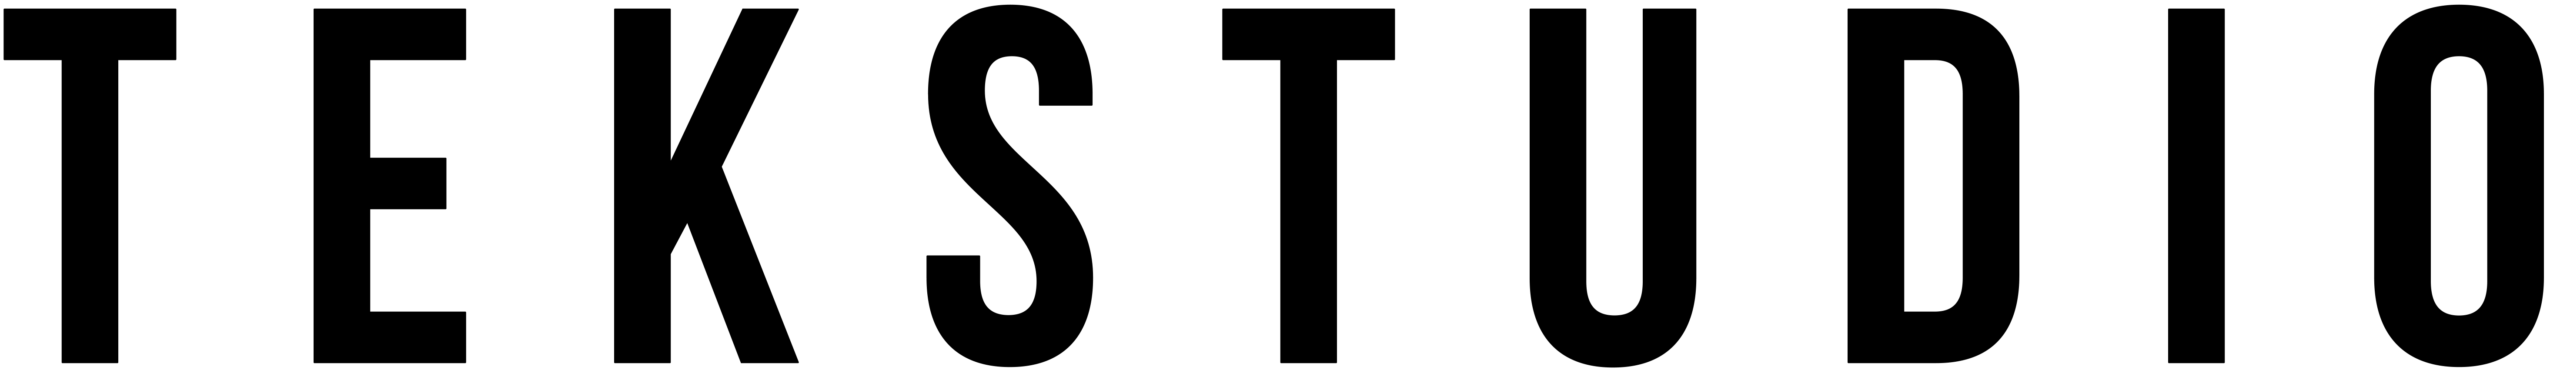 Logo_TEK_black_website-scaled.png